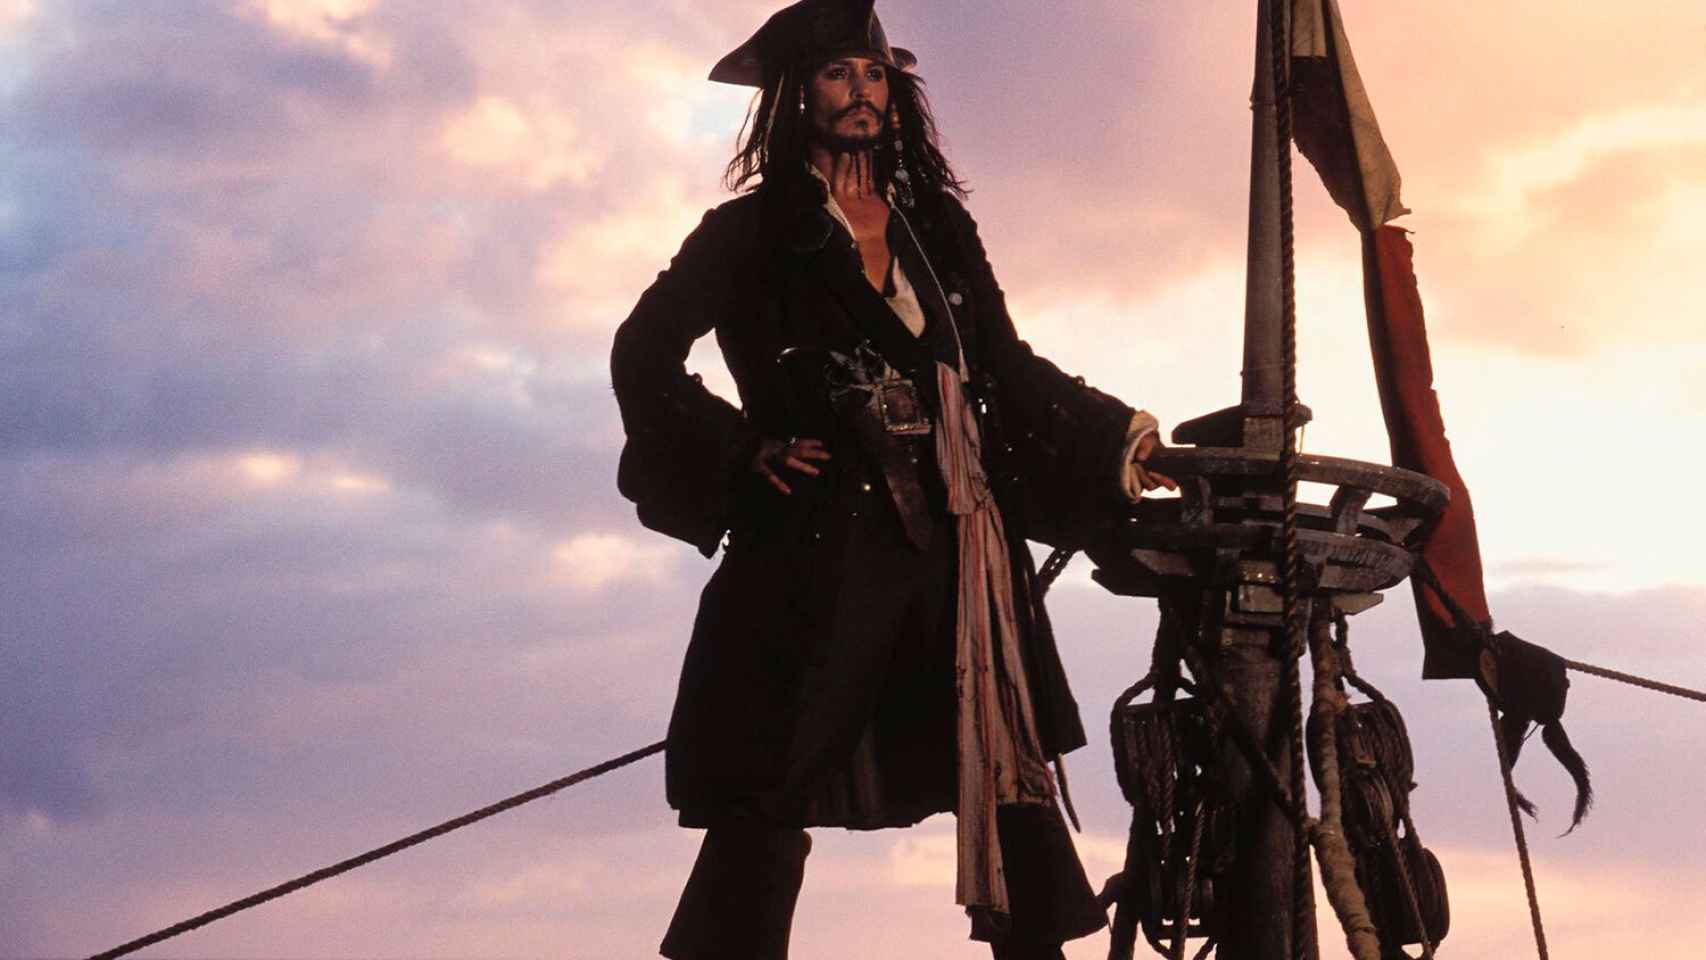 Fotograma de 'Piratas del Caribe', protagonizado por Johnny Depp.